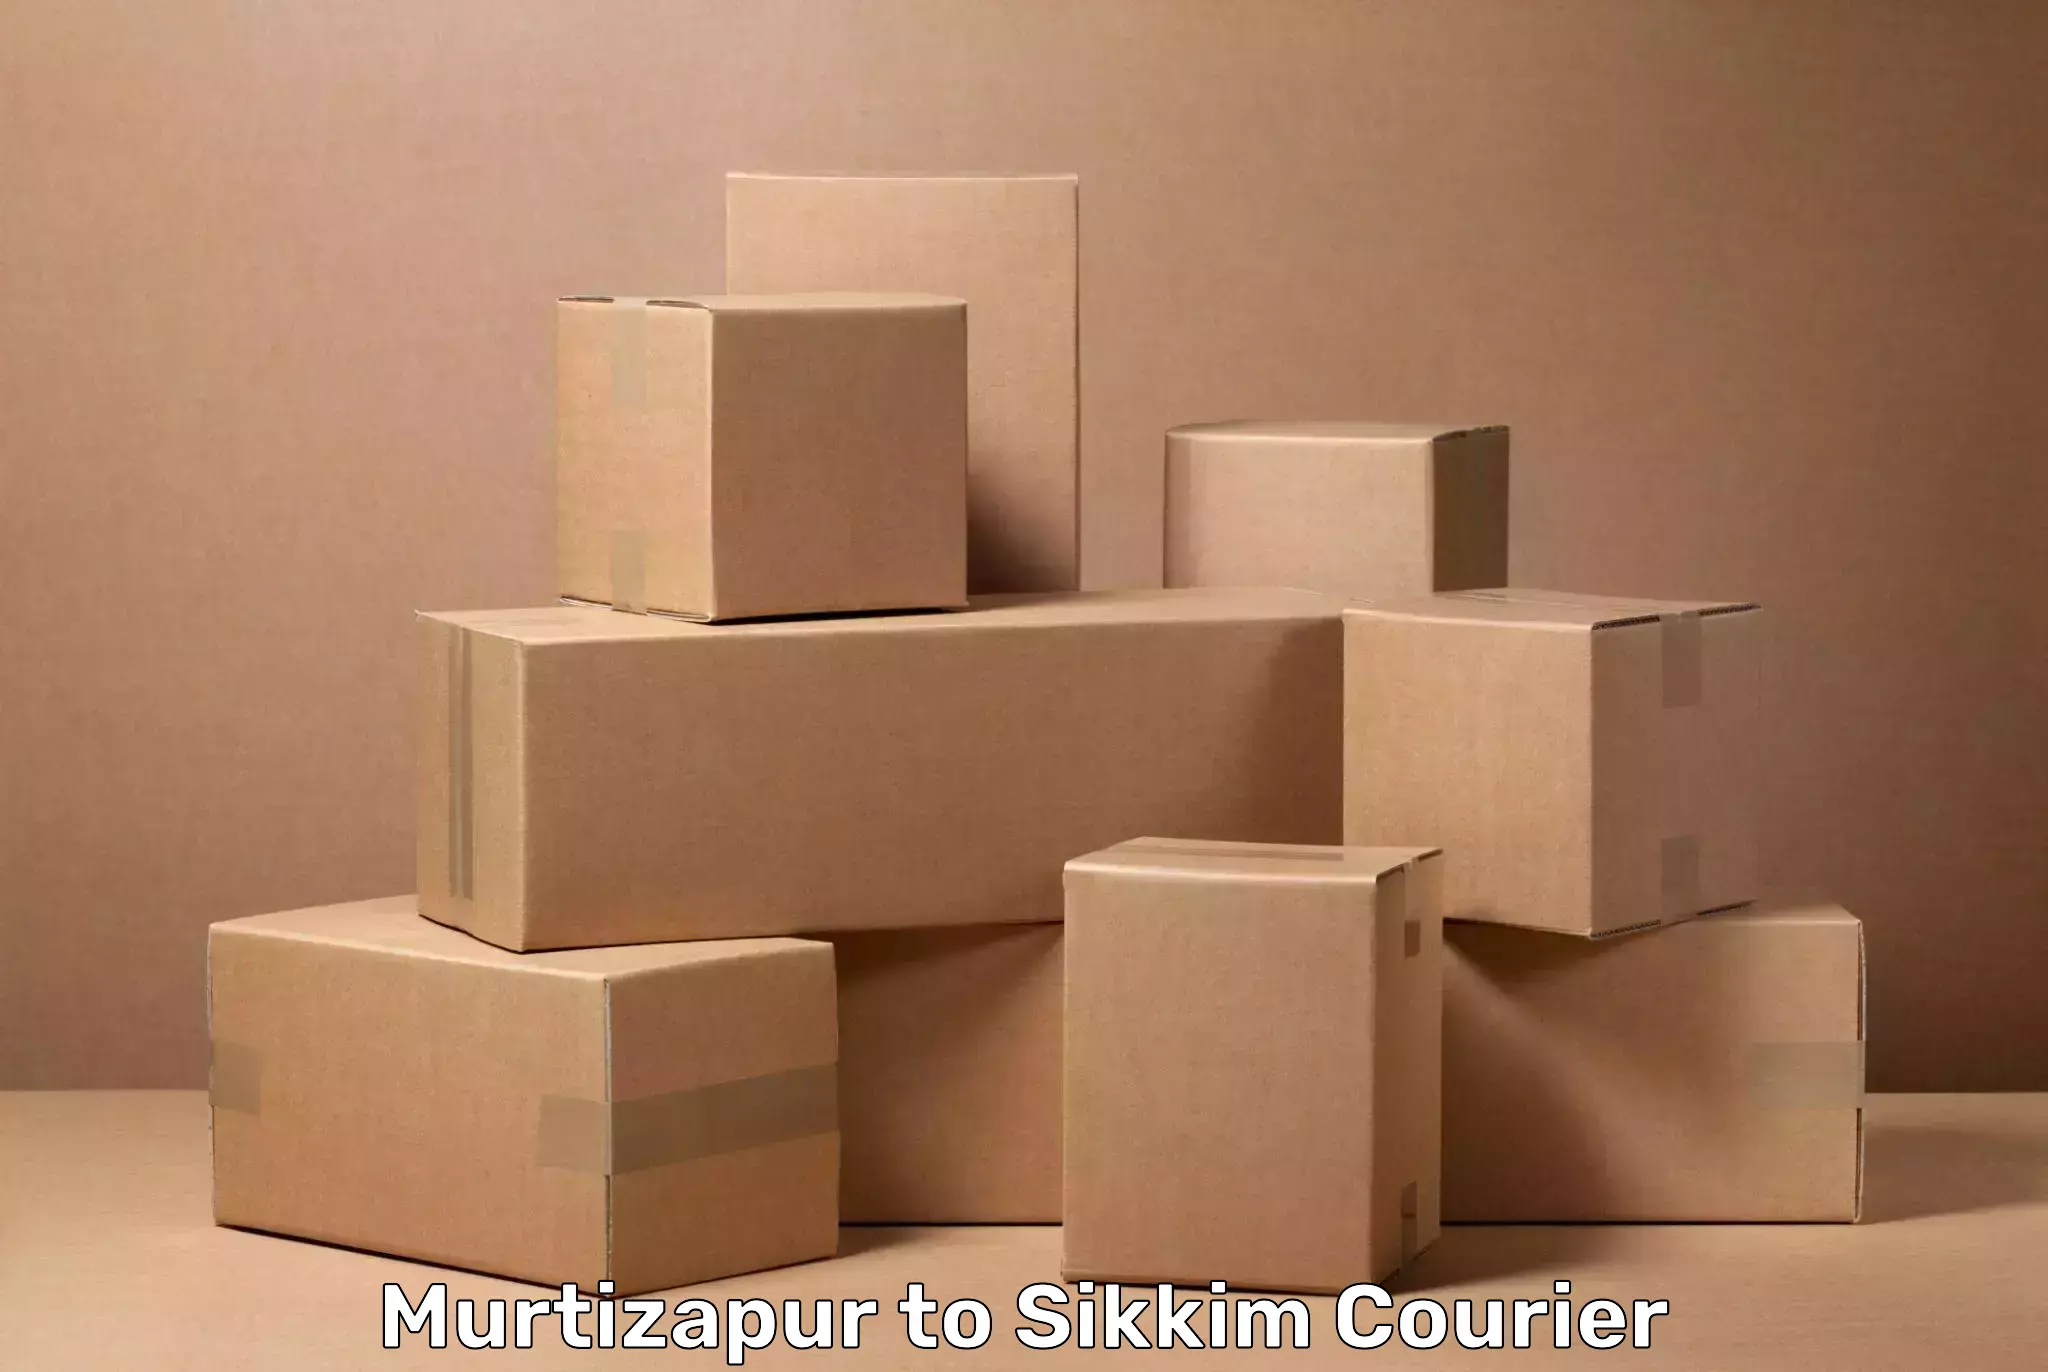 Luggage transfer service Murtizapur to NIT Sikkim